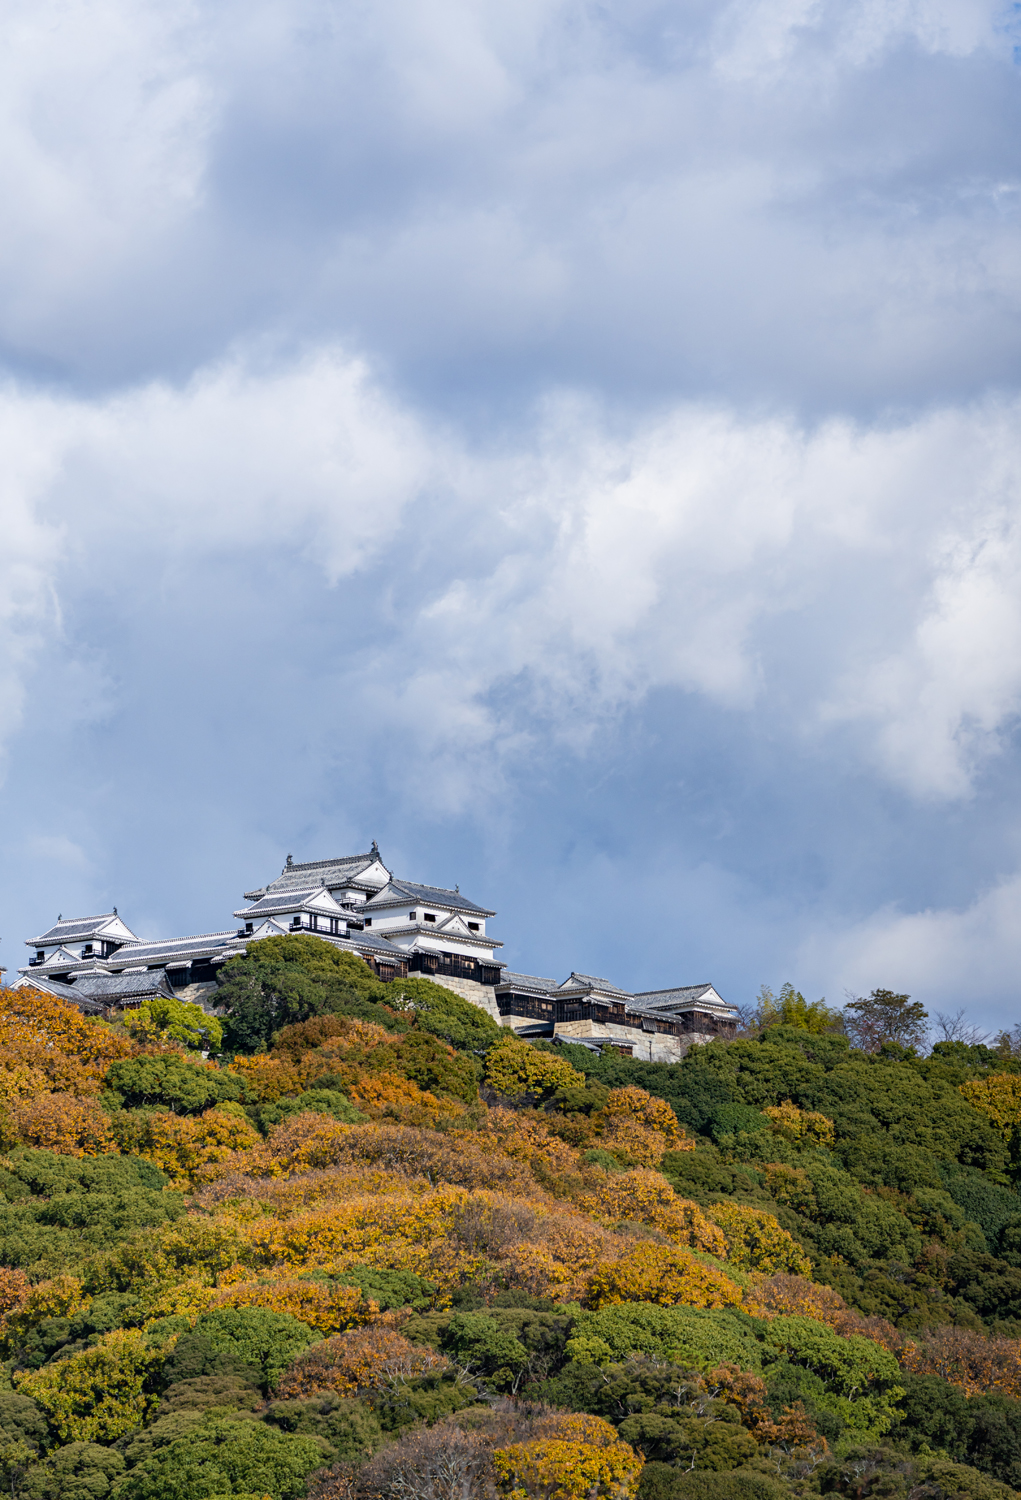 曇り空と松山城 / Cloudy sky and Matsuyama Castle